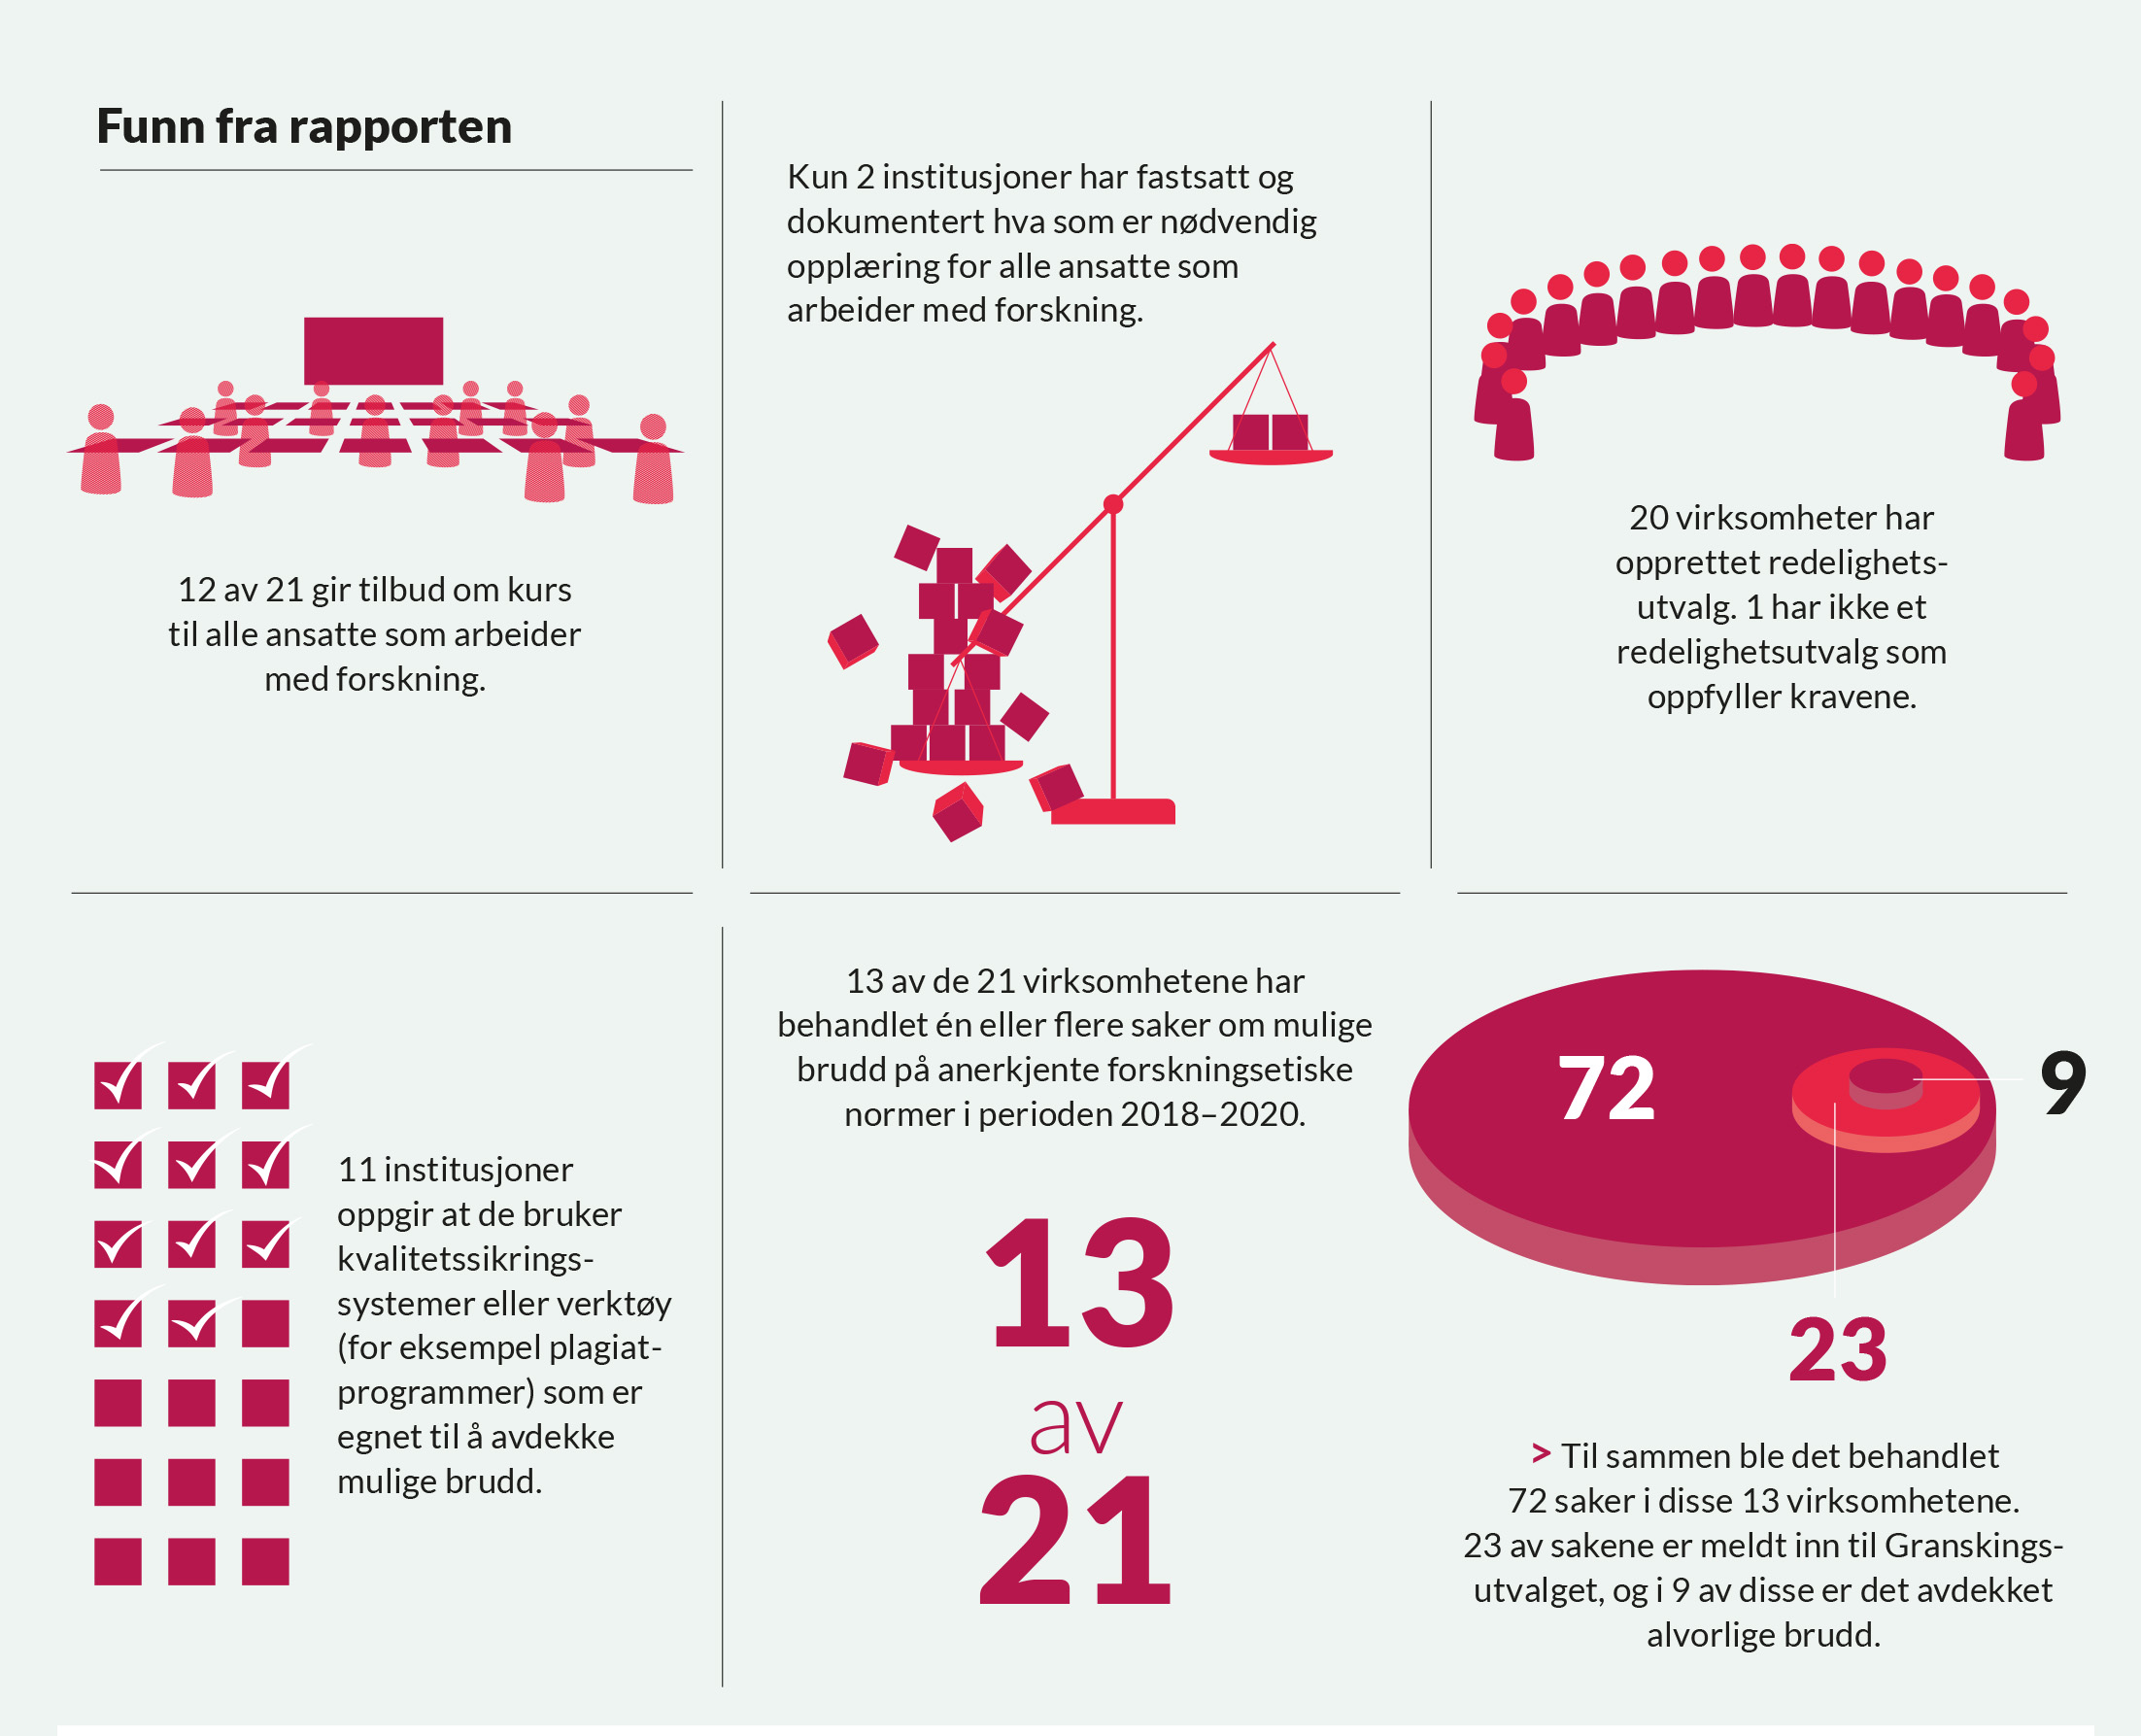 Infografikk som viser funn fra rapporten - 12 av 21 virksomheter gir tilbud om kurs, kun to av 21 har fastsatt og dokumentert hva som er nødvendig opplæring etc.